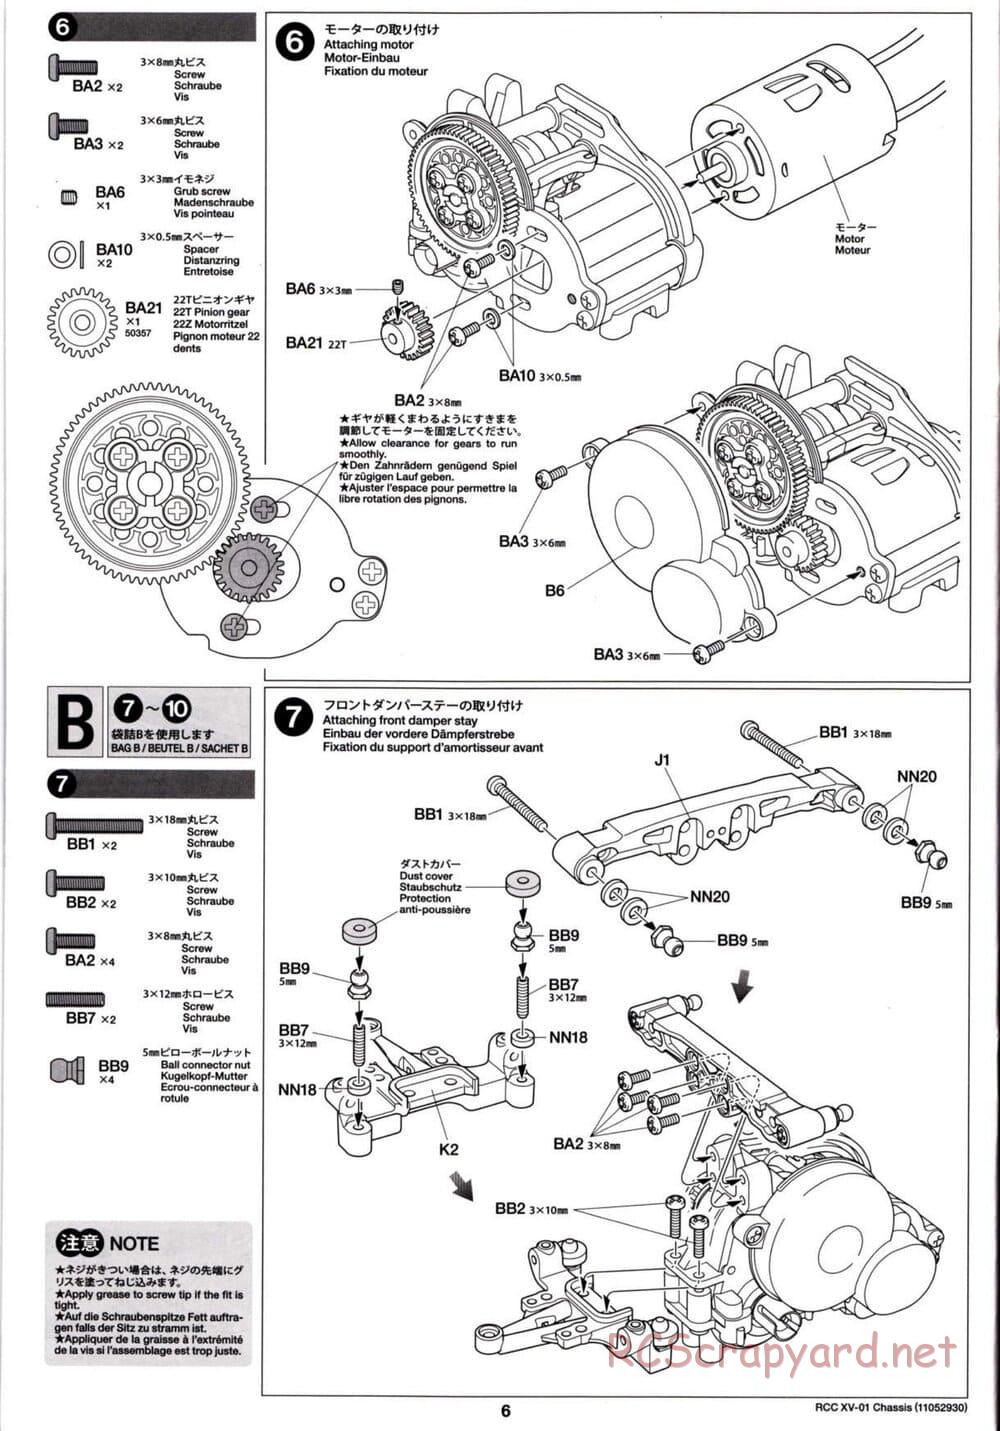 Tamiya - XV-01 Chassis - Manual - Page 6